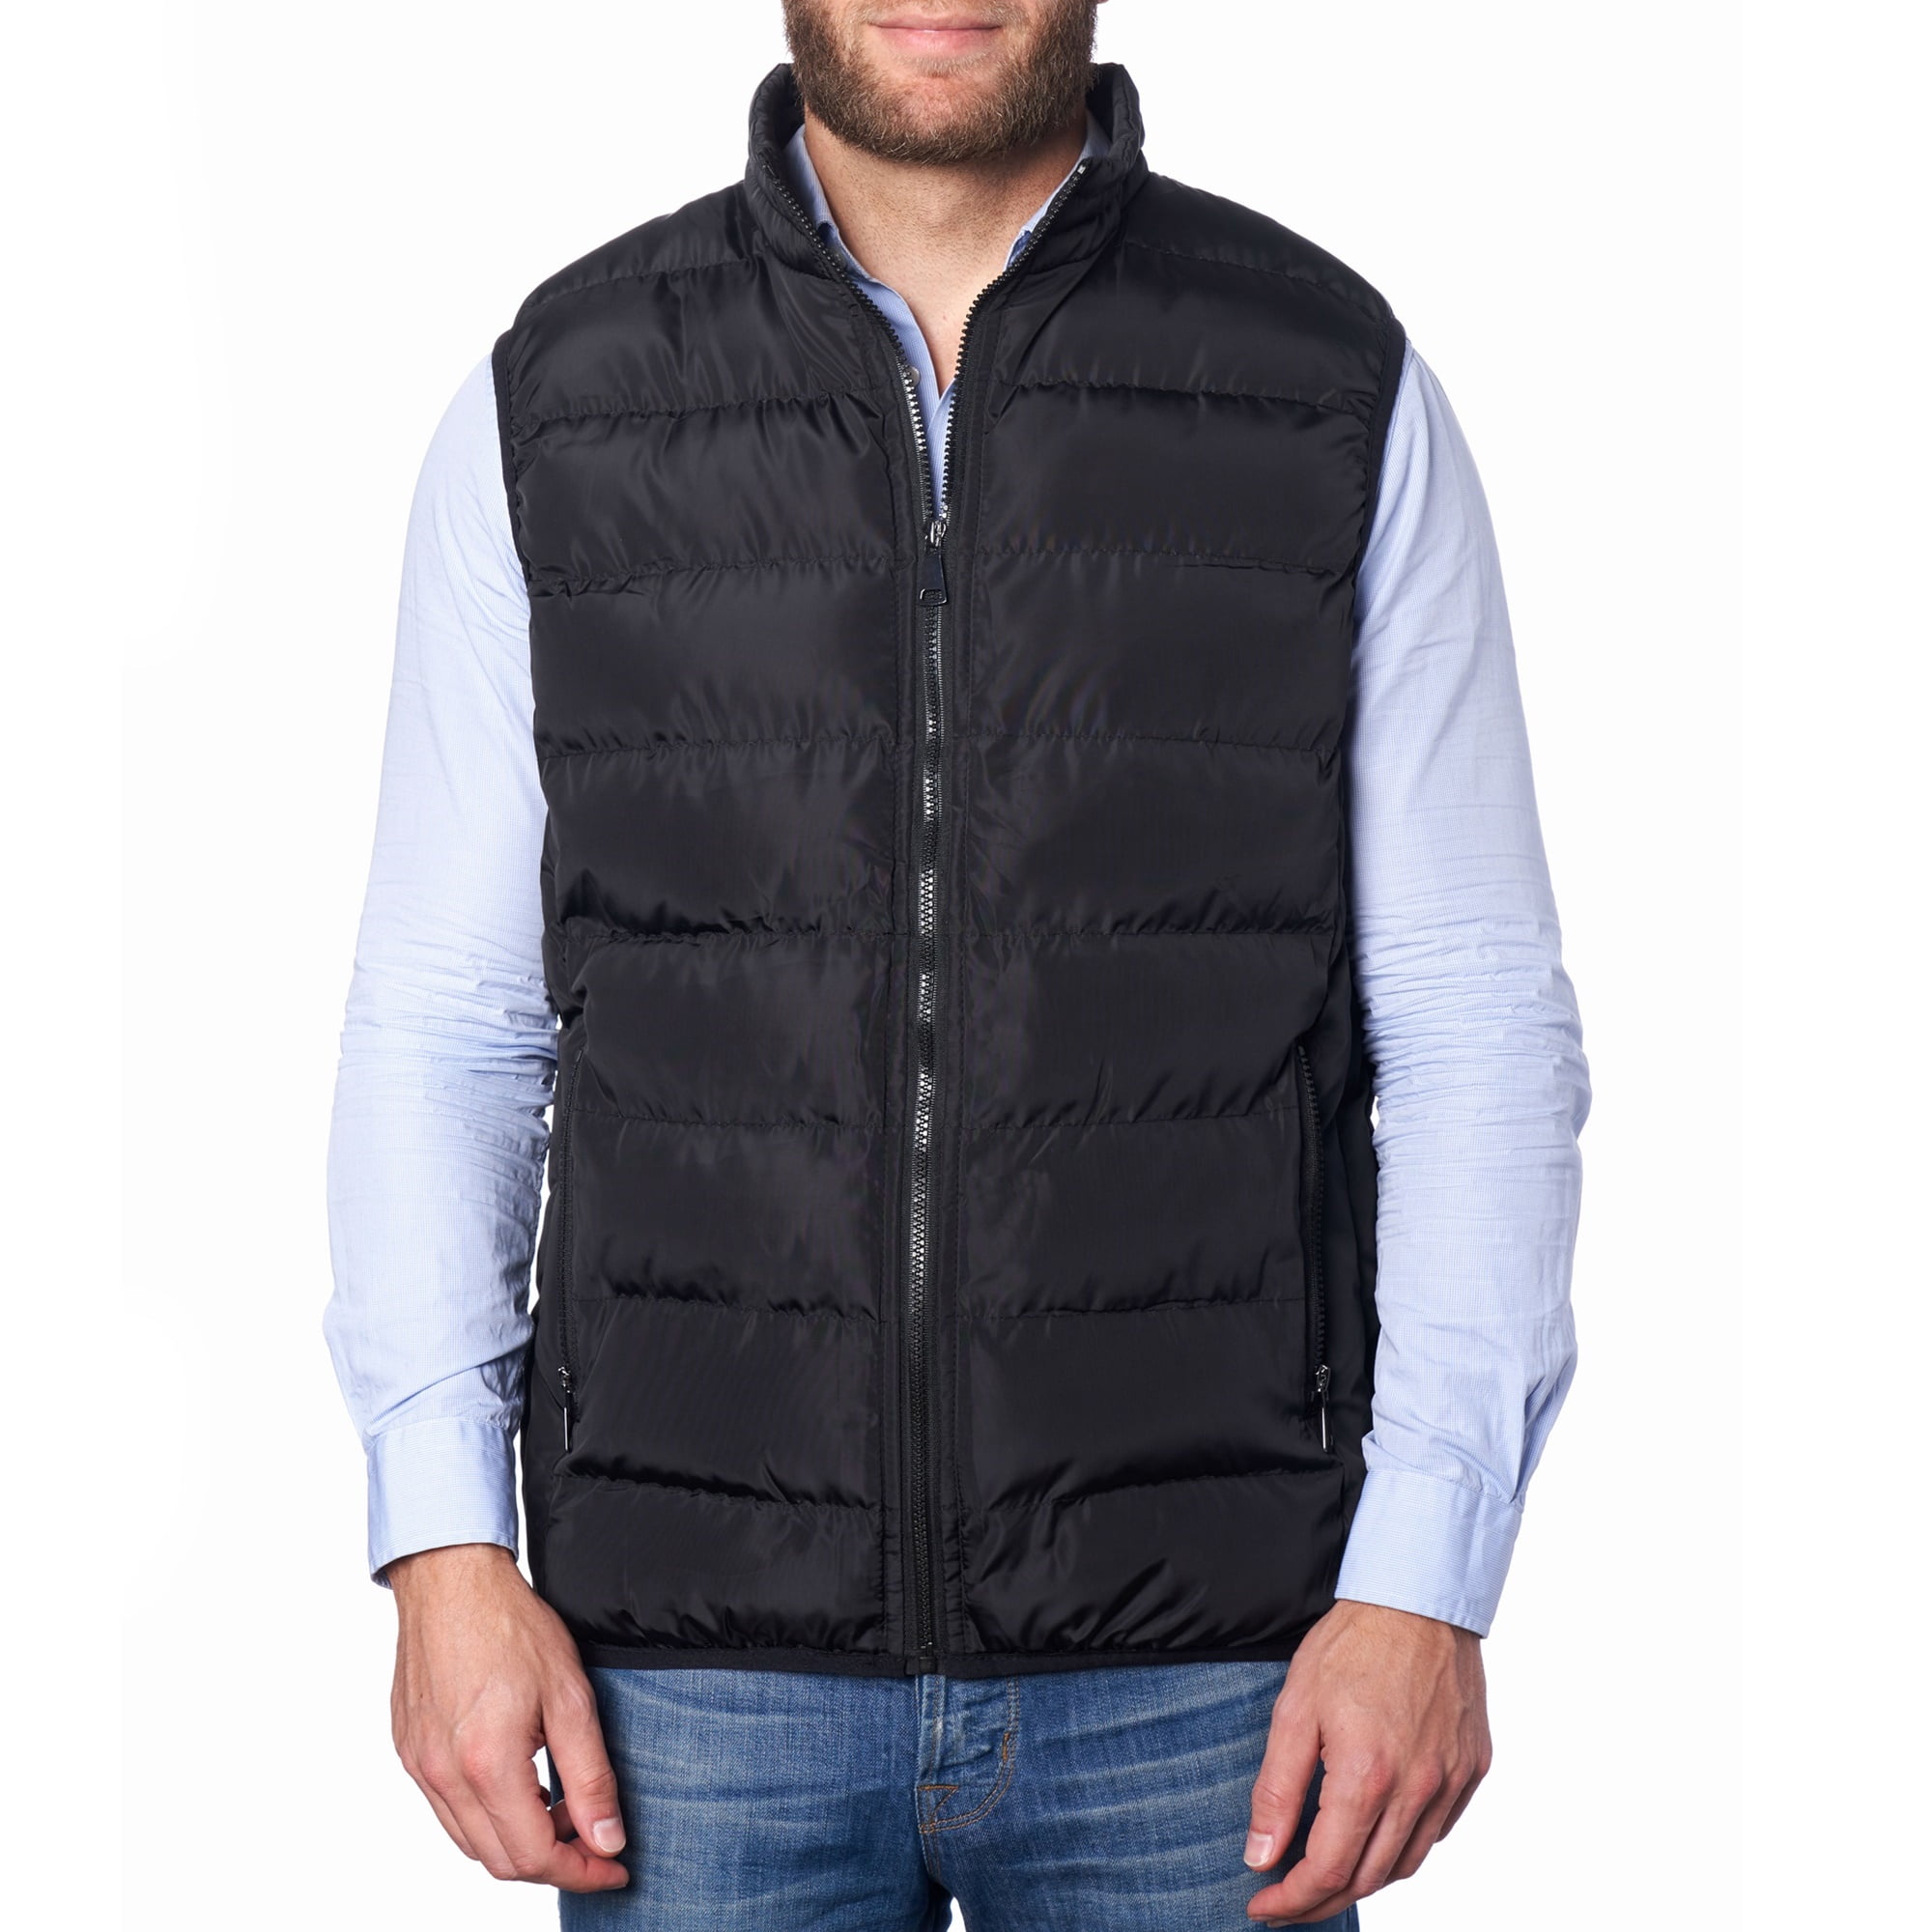 Keaac Mens Packable Puffer Vest Lightweight Sleeveless Jacket Outwear 